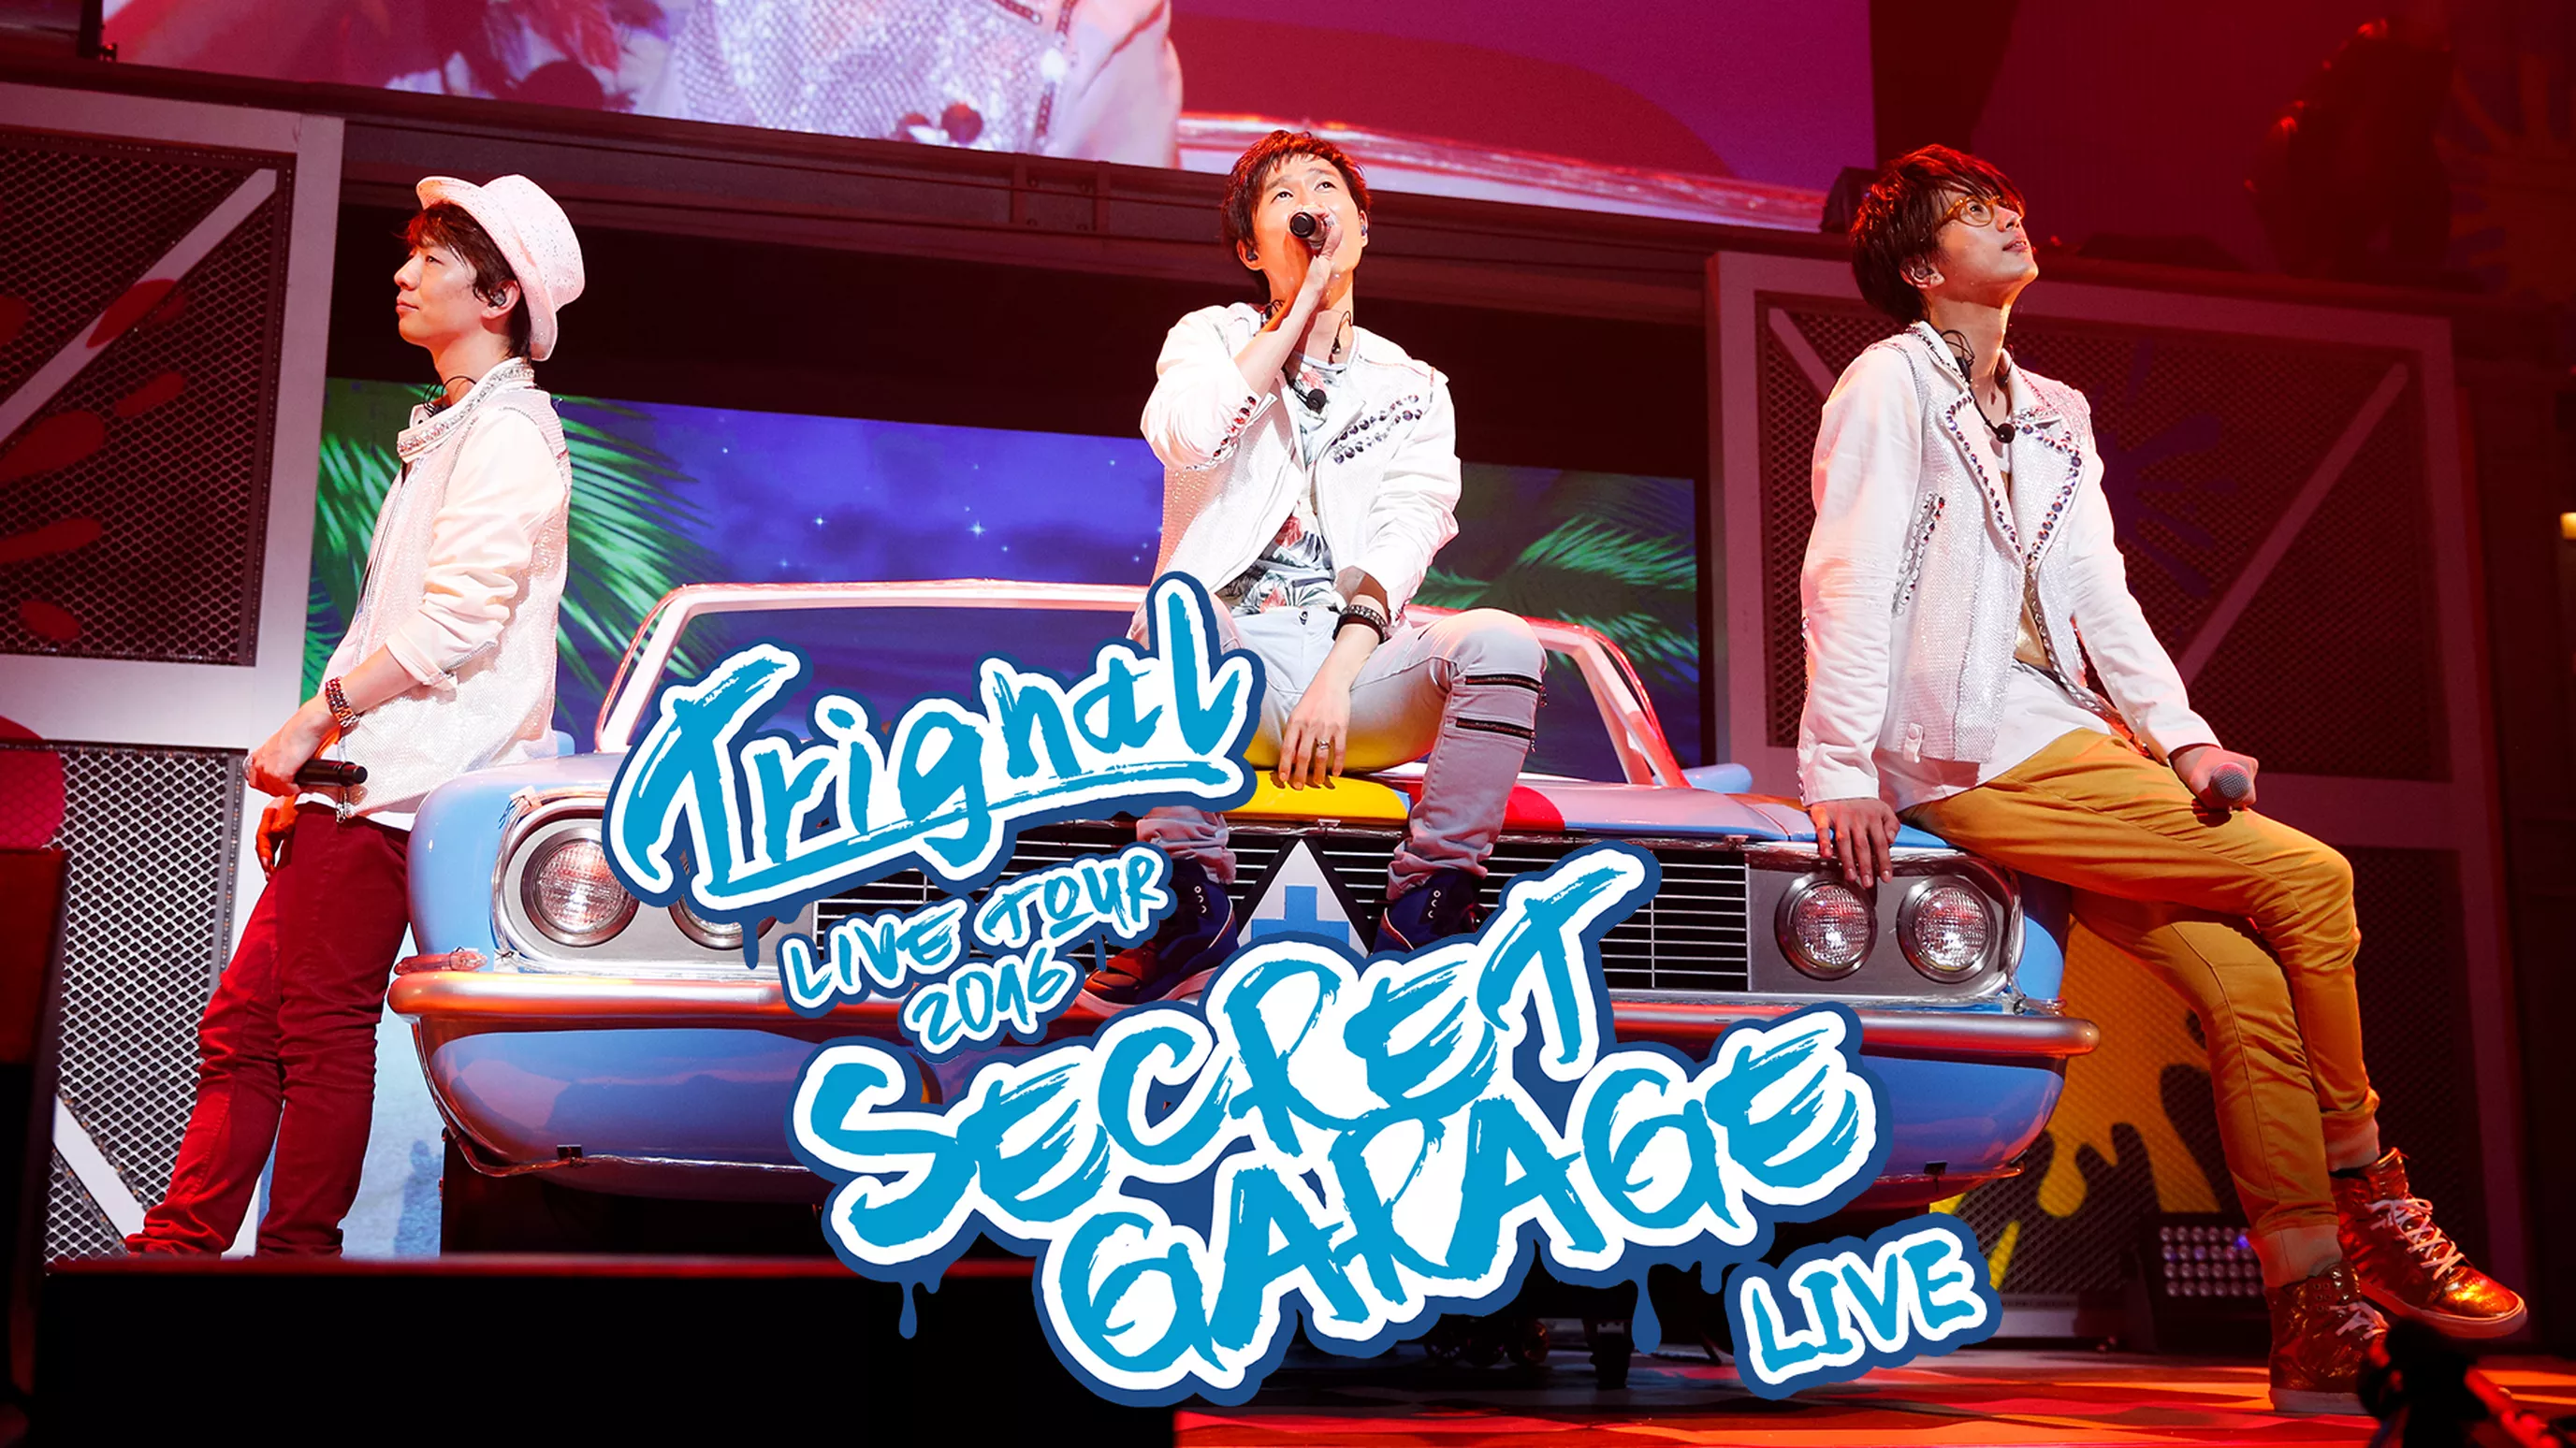 Trignal LIVE TOUR2016 SECRET GARAGE